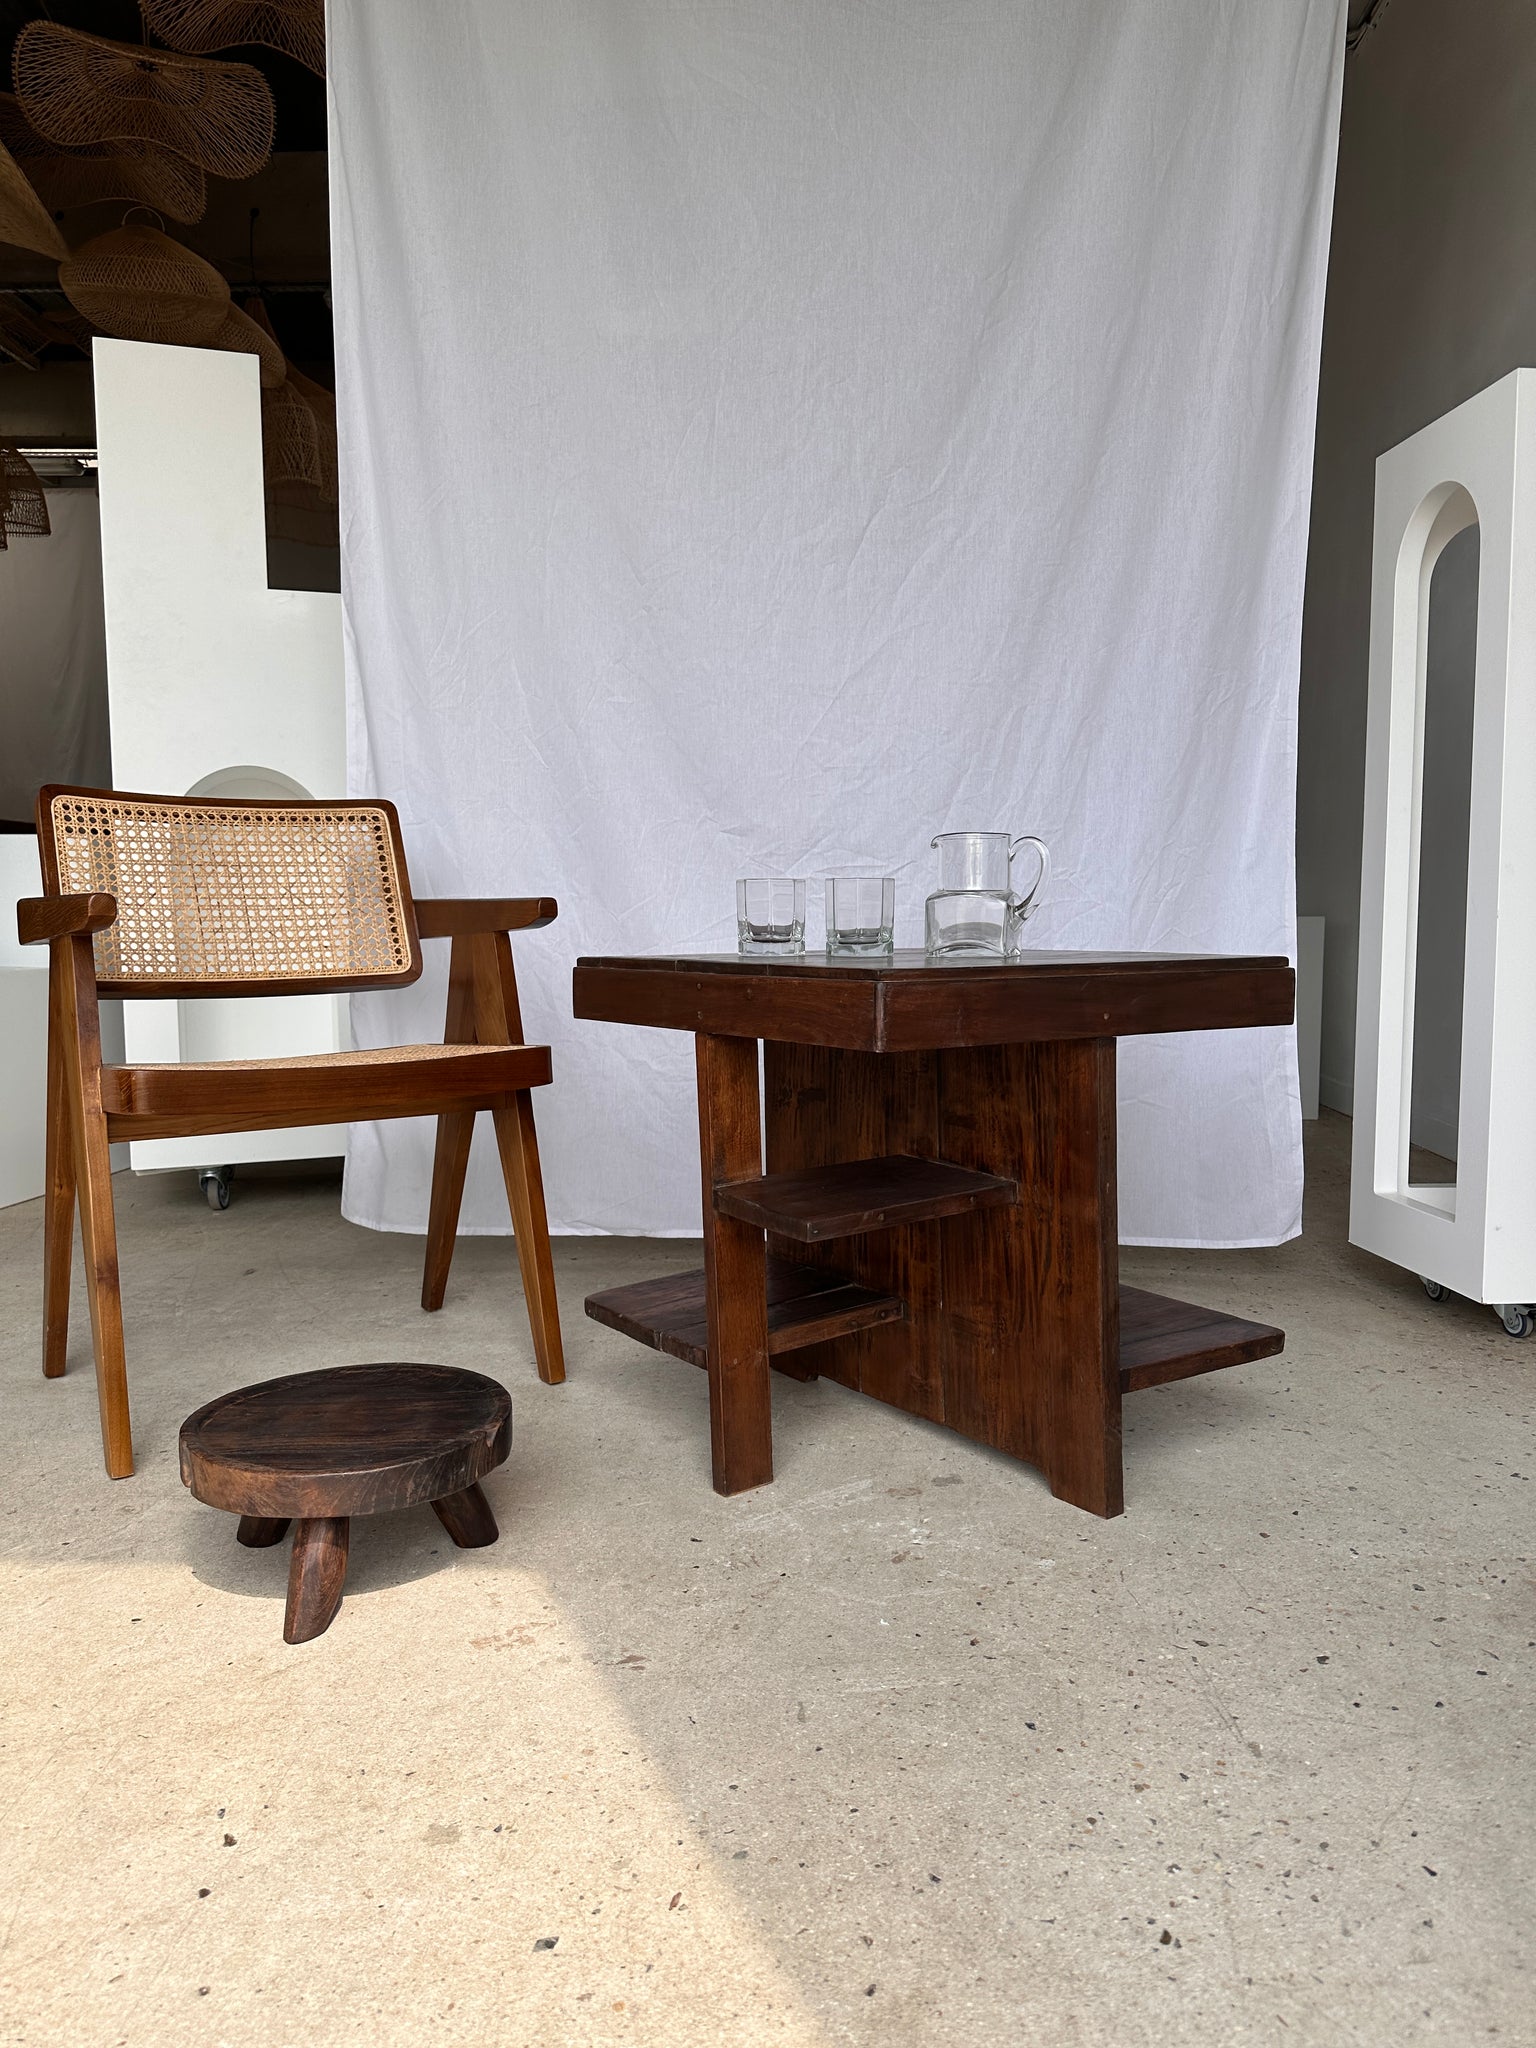 Guéridon ou petite table d'appoint carrée piètement central à tablettes de style moderniste vintage